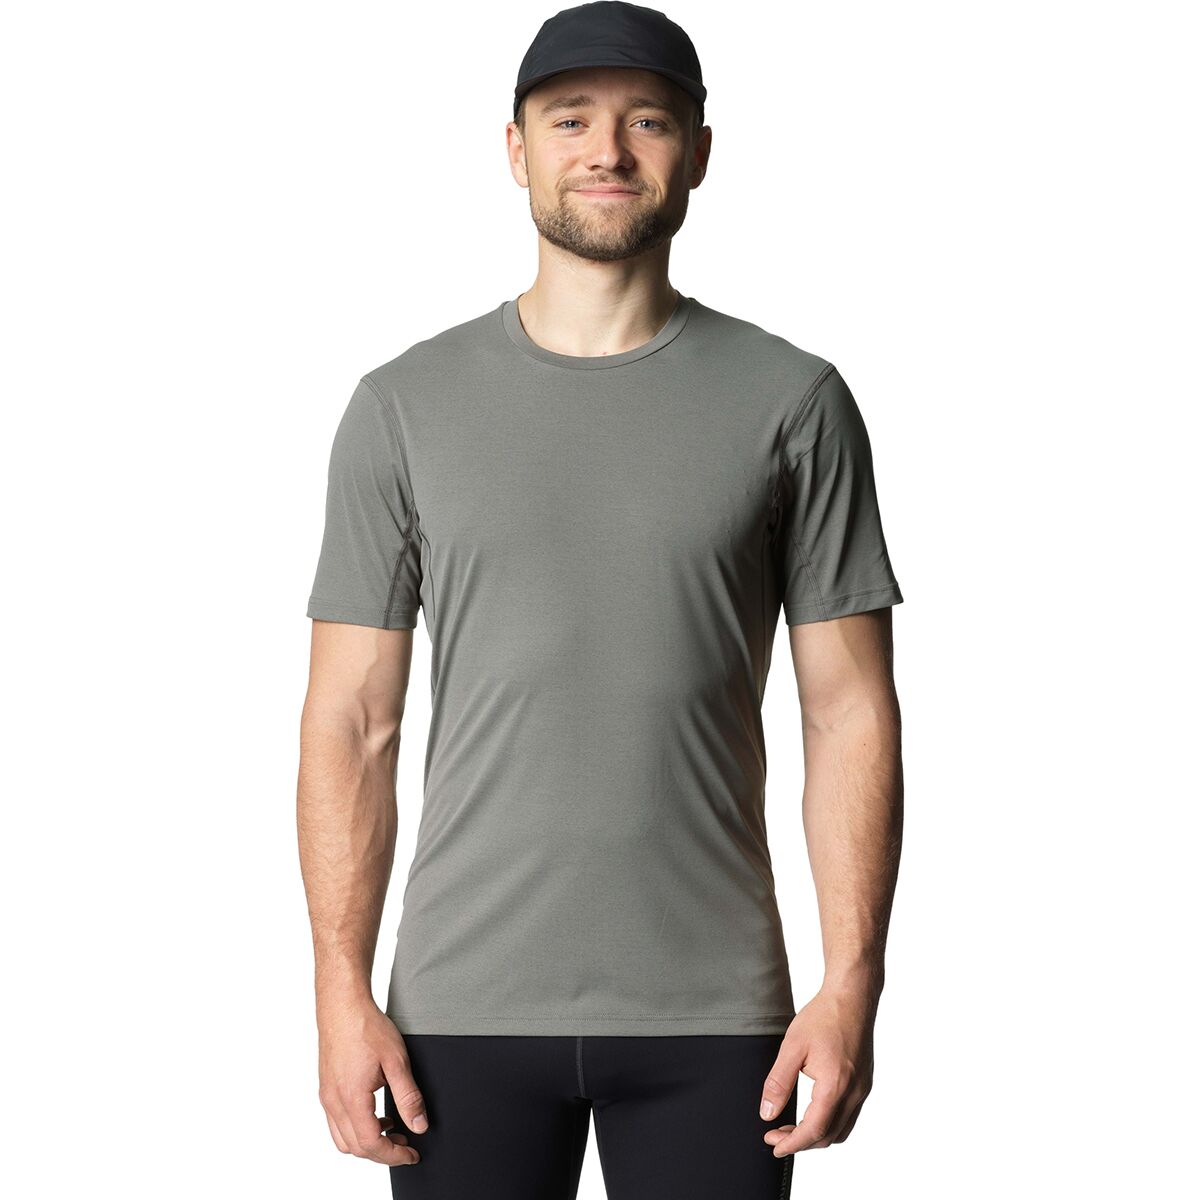 Pace Air T-Shirt - Men